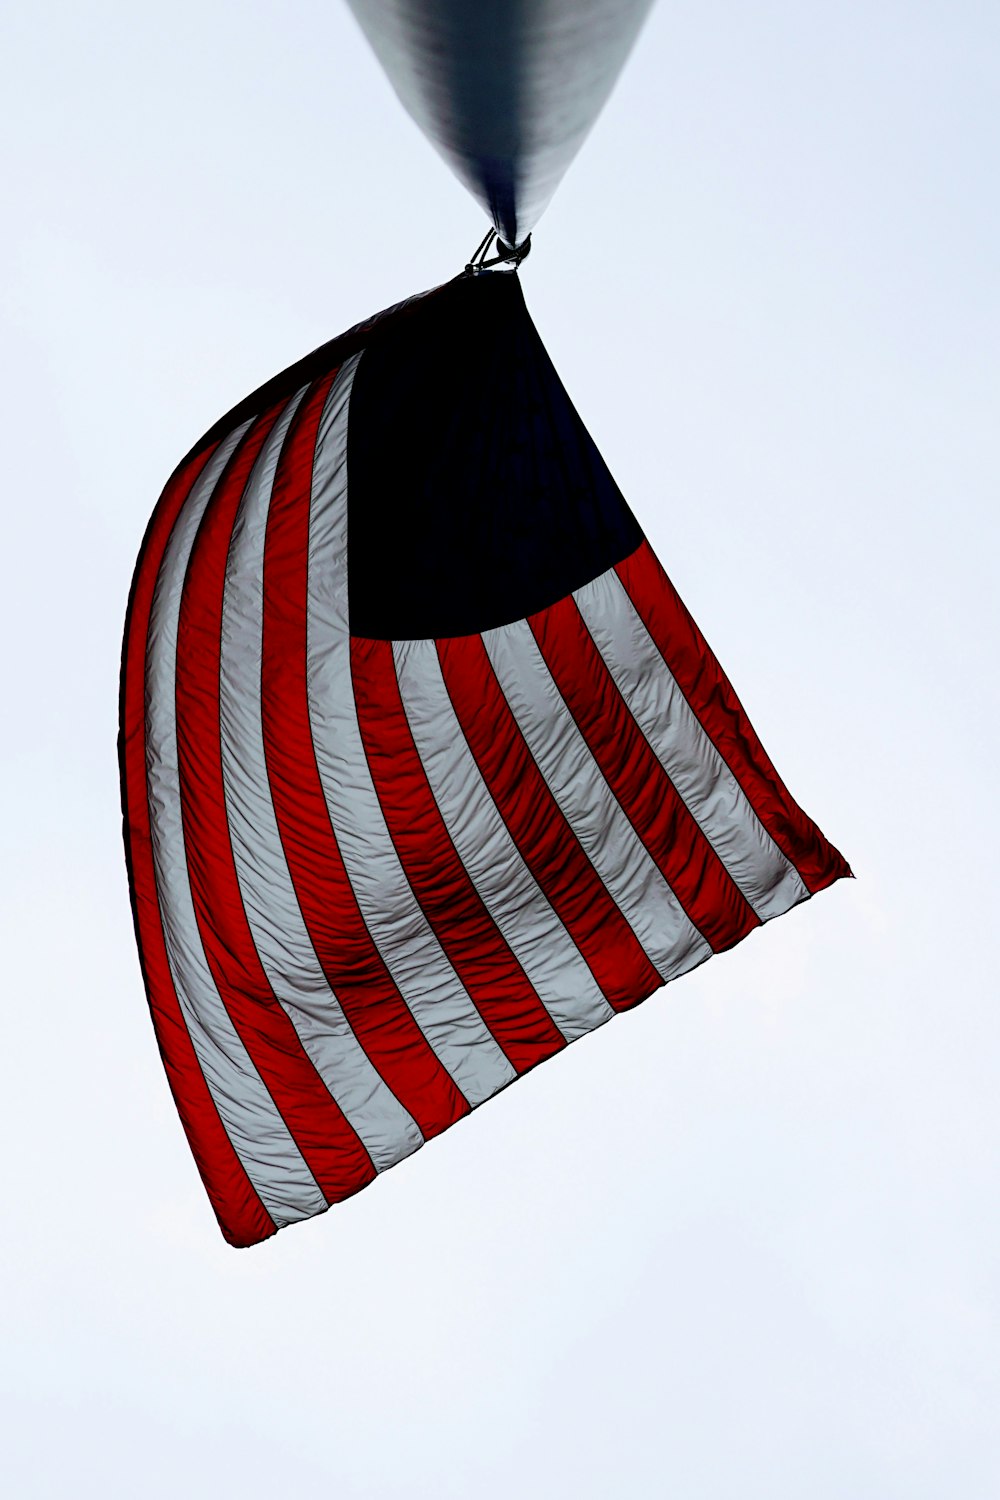 Bandeira do Estado Unido da América no post de metal preto durante o dia